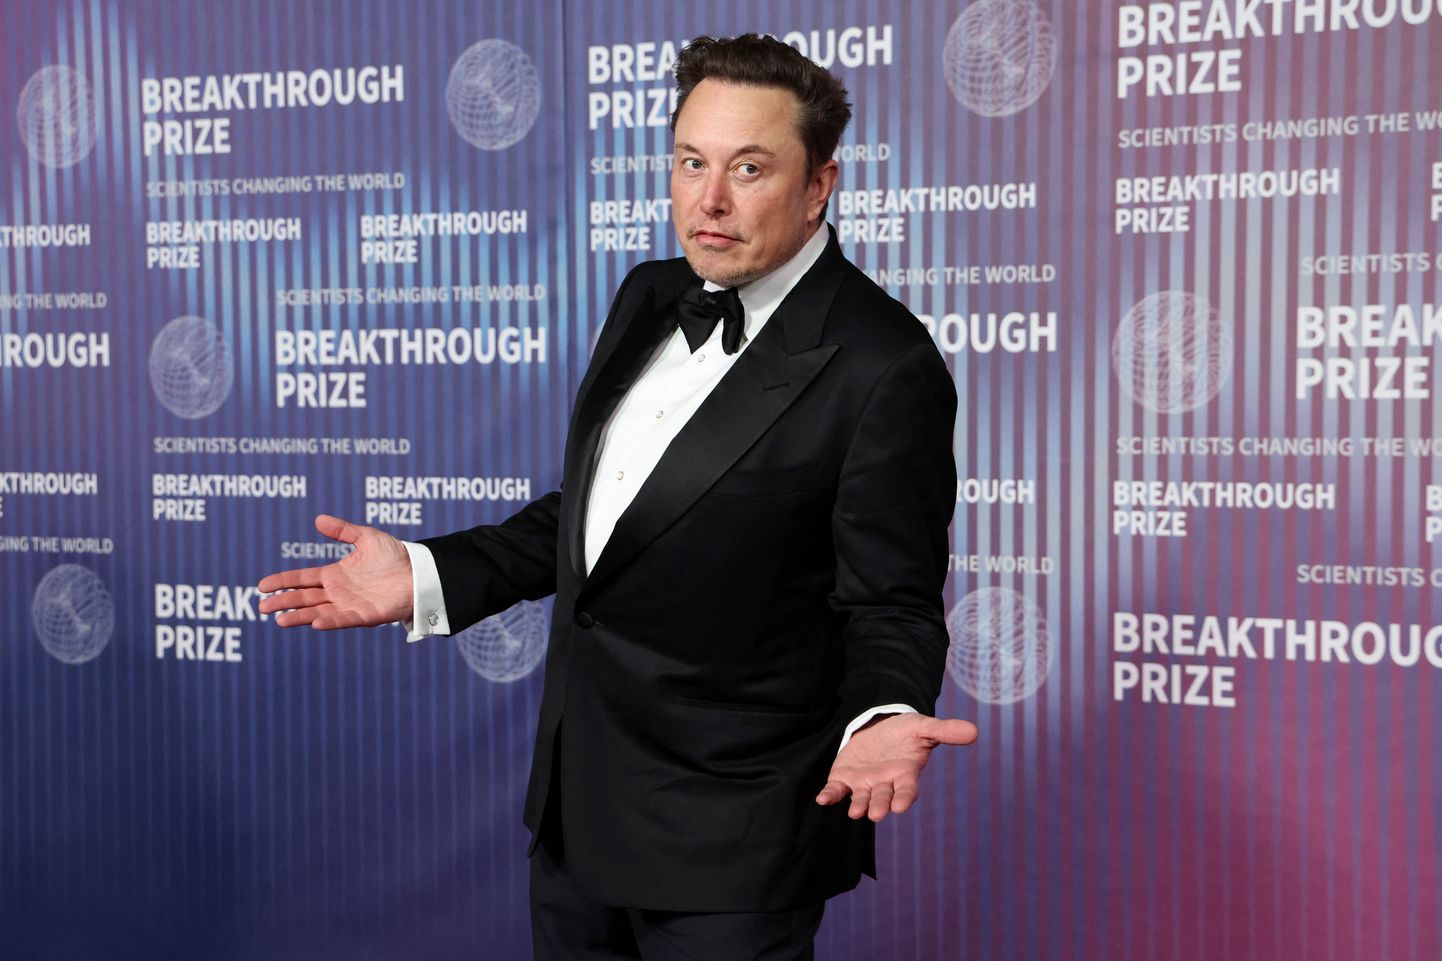 Elon Musk laseb lahti enam kui kümnendiku Tesla töötajatest ja tahab saada varem endale määratud ning tühistatud 55,8 miljardi dollari suurust tasupaketti.